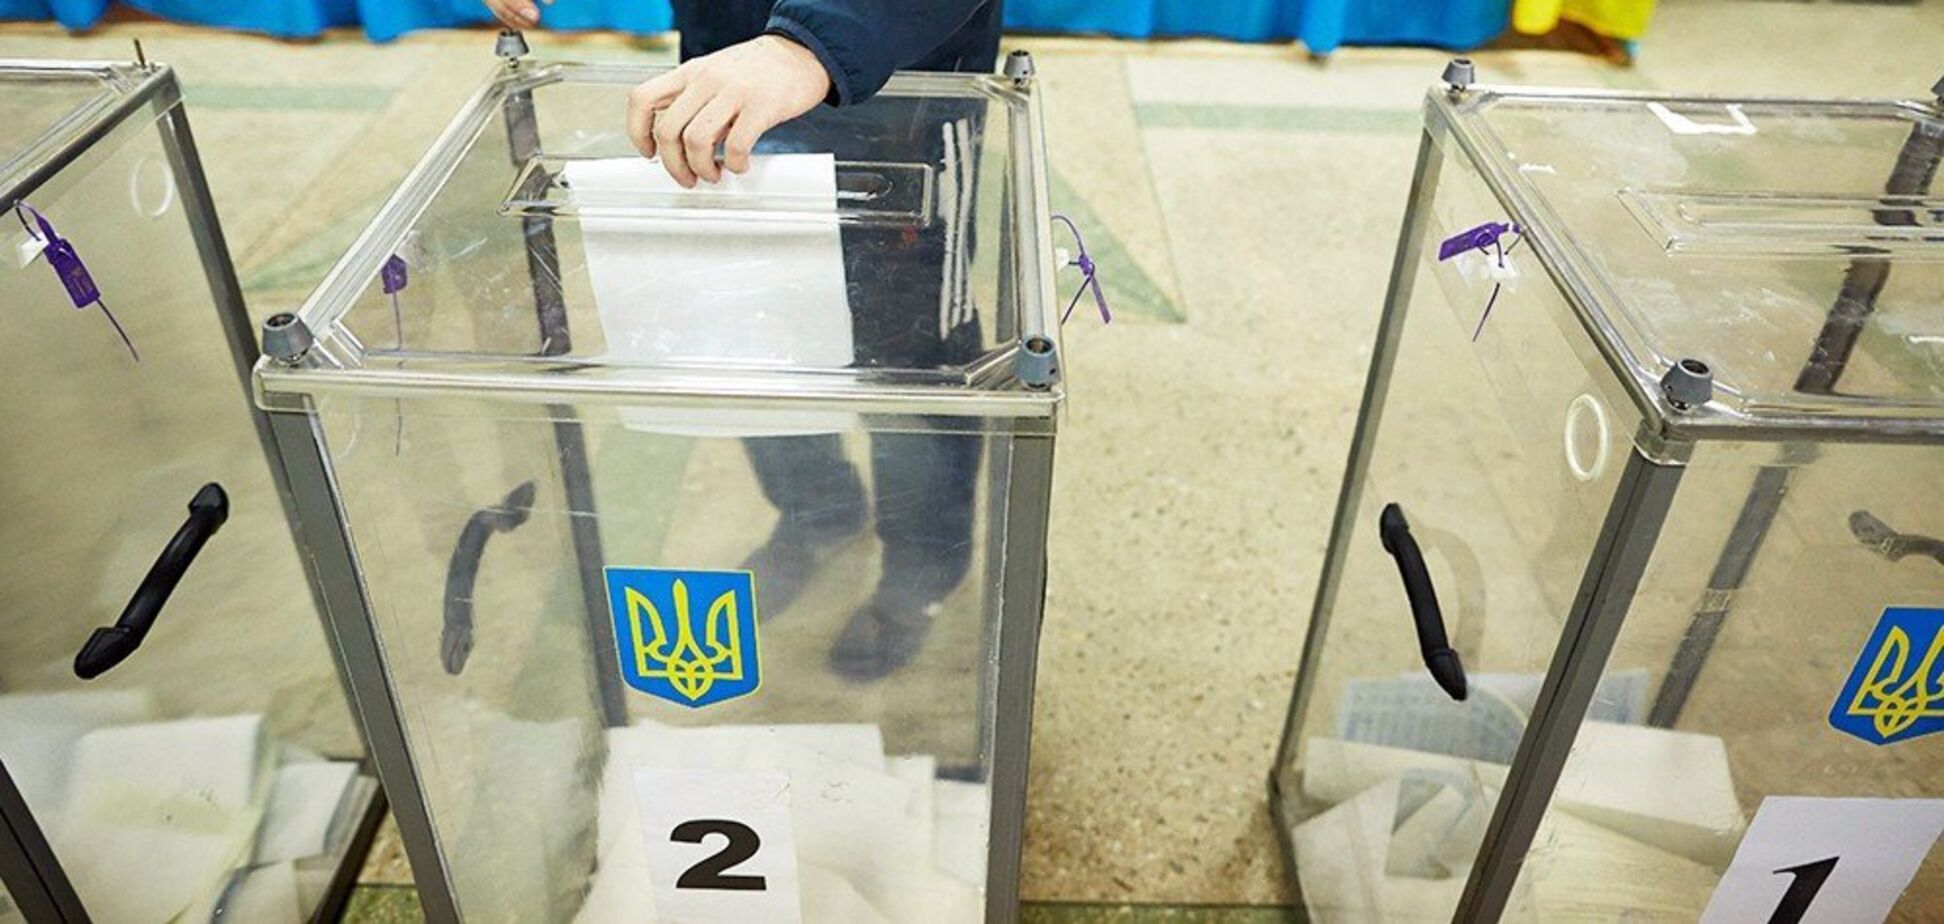 С большим отрывом: украинцы назвали лидера президентской гонки 